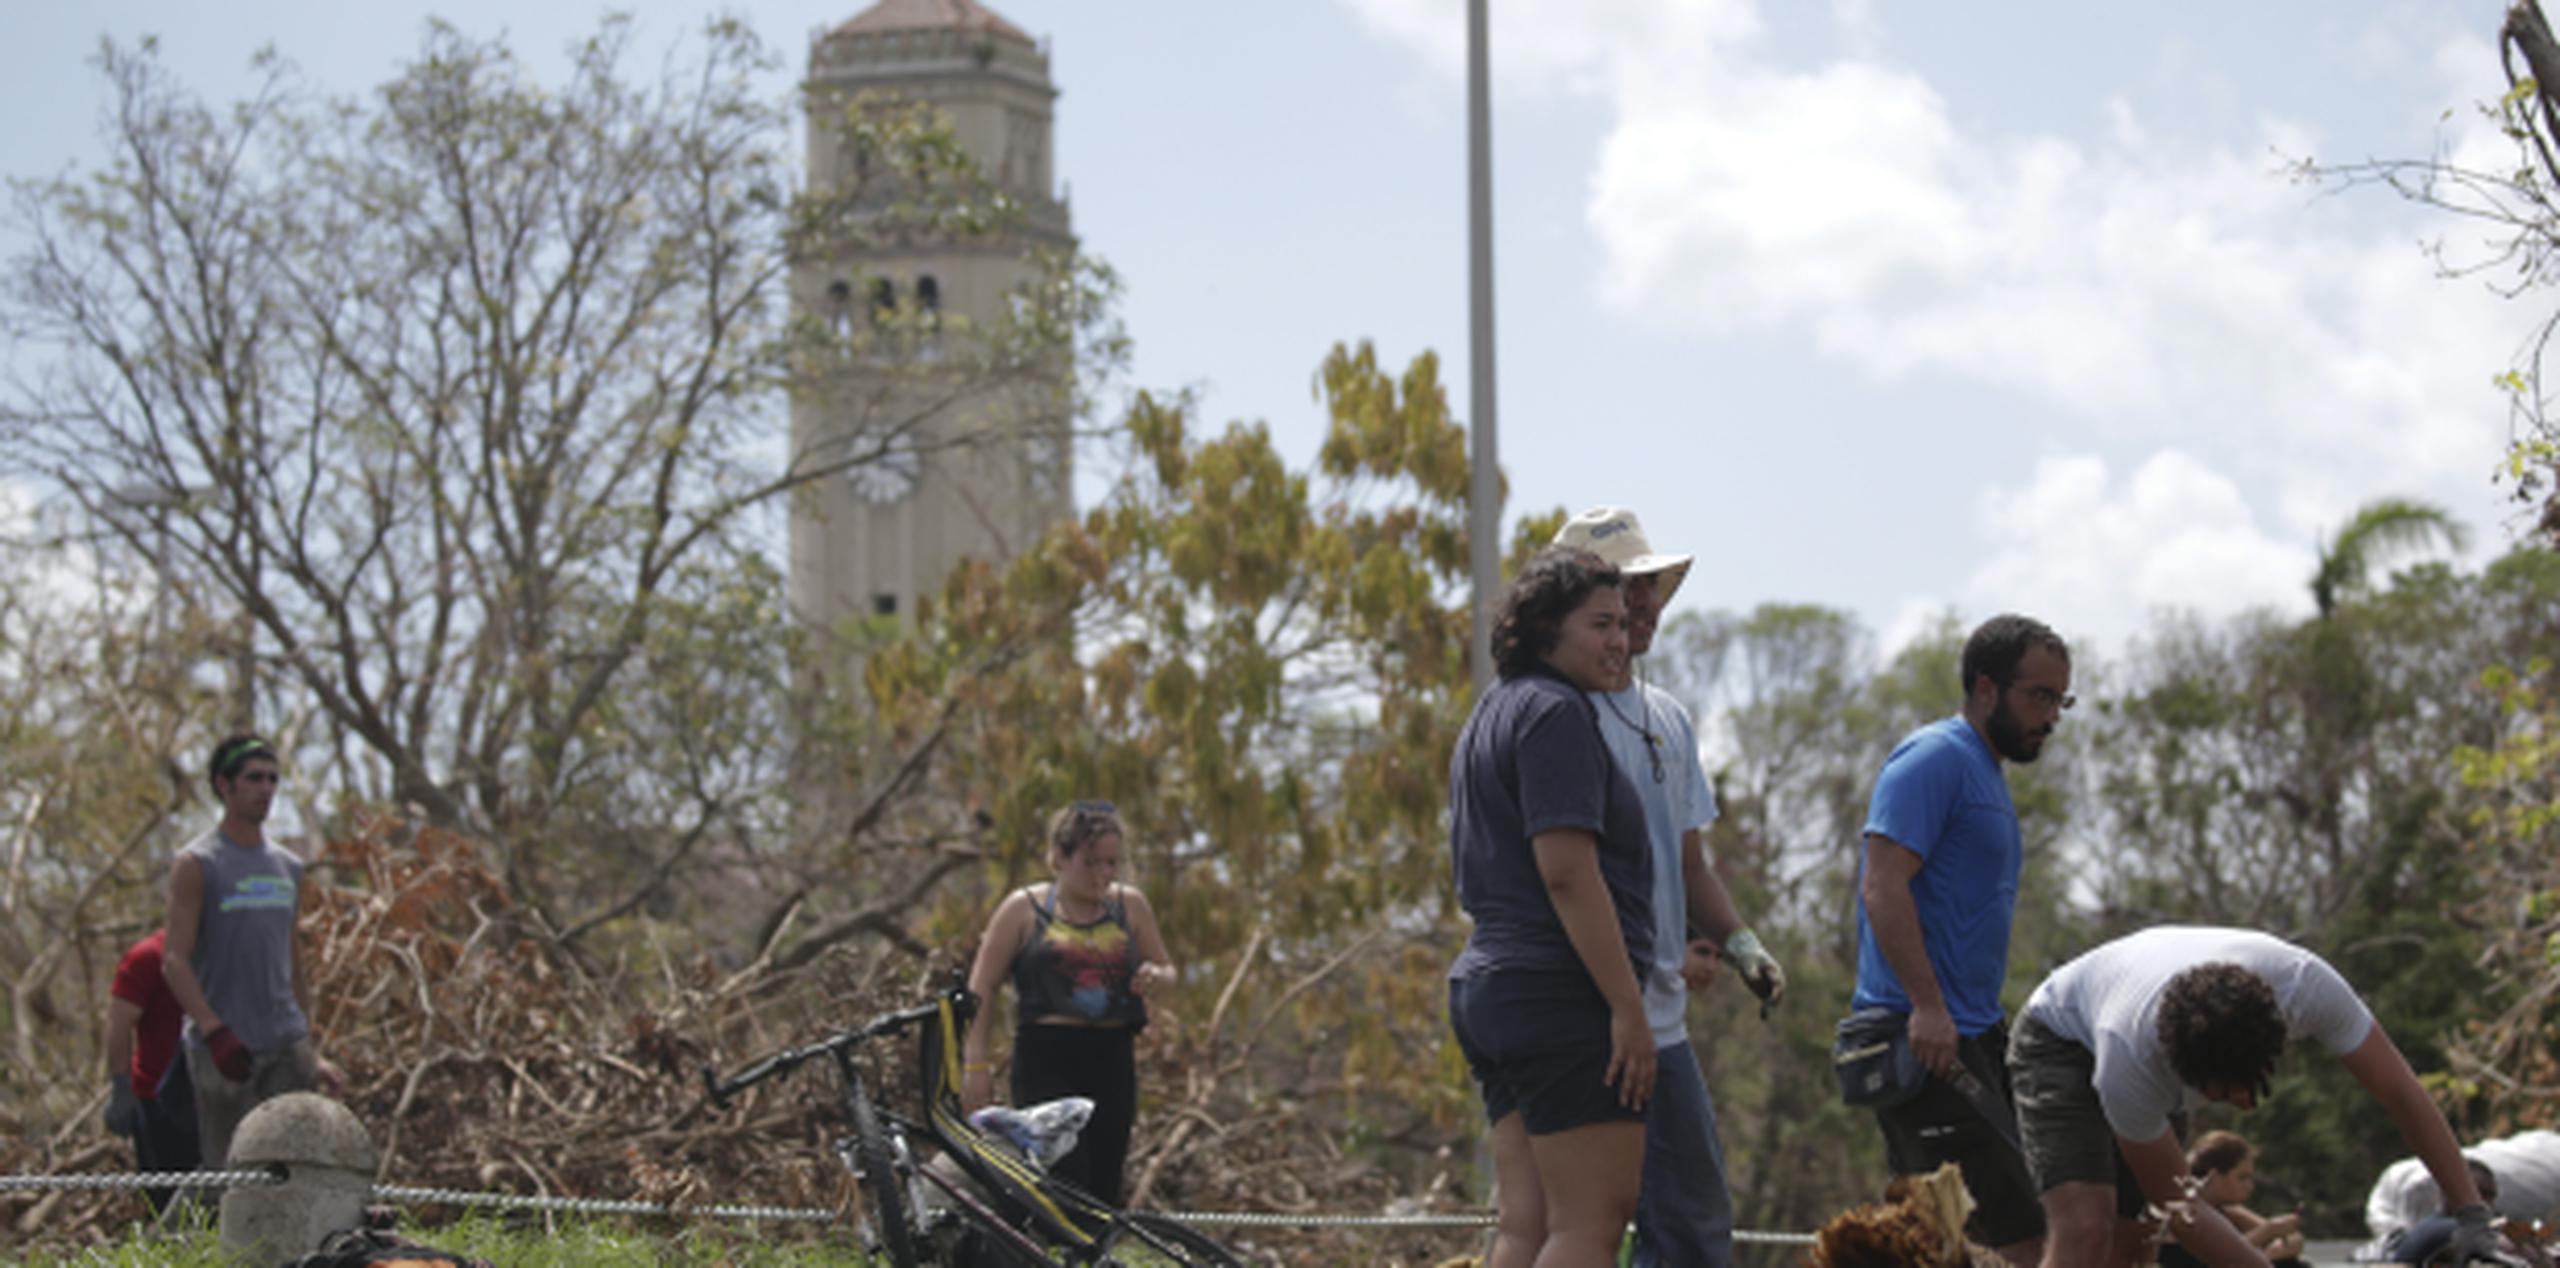 Estudiantes y trabajadores de la Universidad de Puerto Rico se unieron para limpiar los recintos luego de los desastres que dejó el huracán María.
 (TERESA.CANINO@GFRMEDIA.COM)
